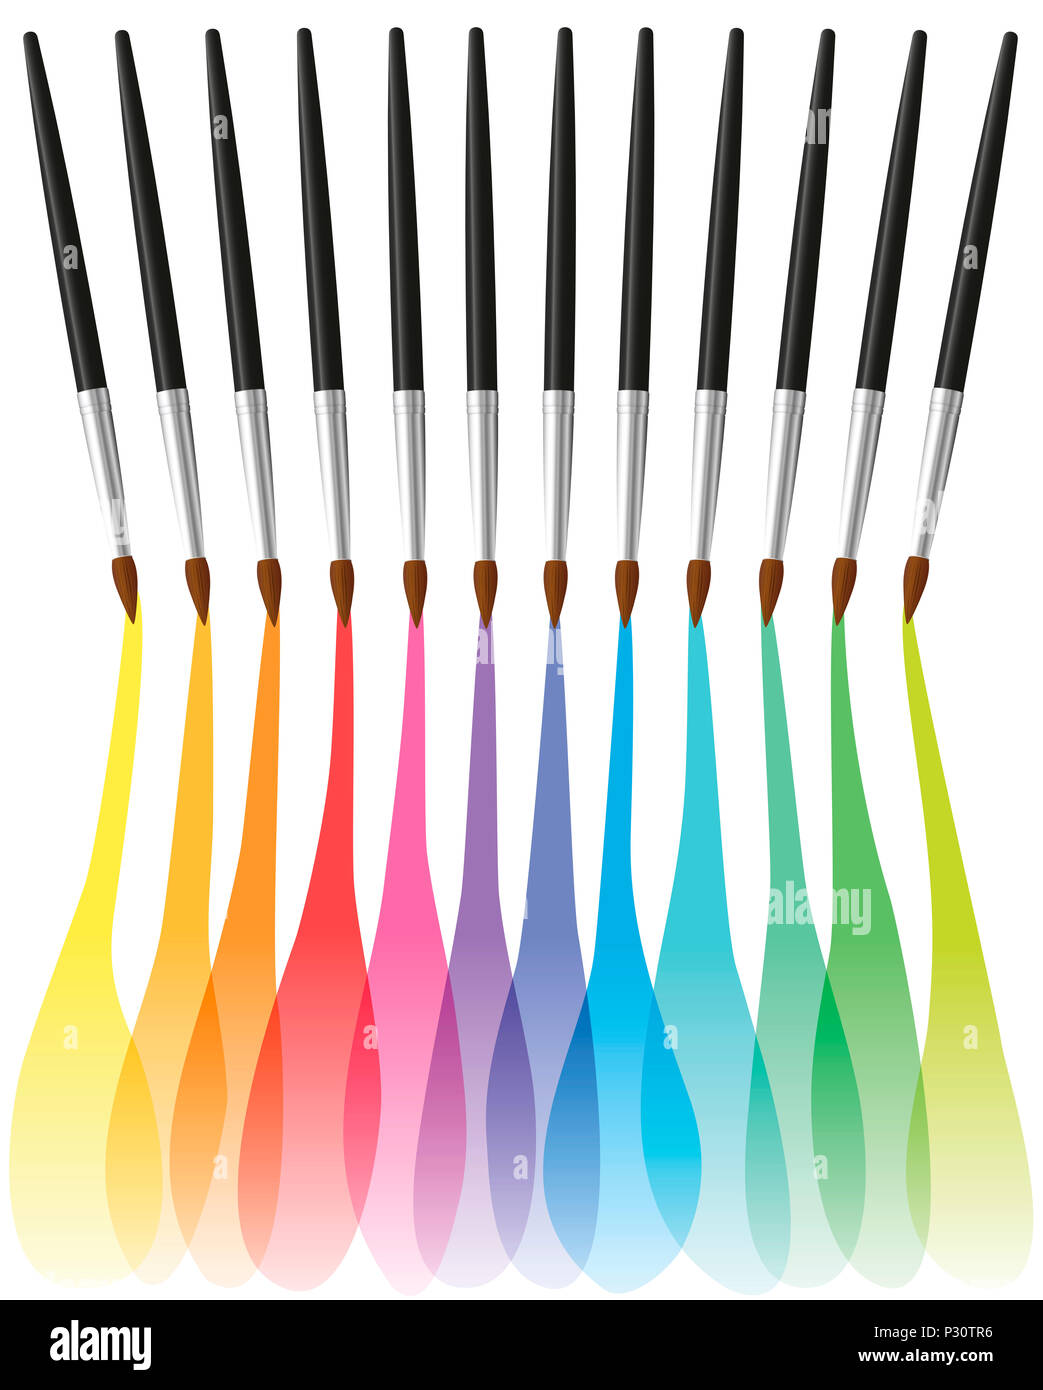 Peinture pinceaux de couleur arc-en-ciel coloré de pinceau fusion - illustration sur fond blanc. Banque D'Images